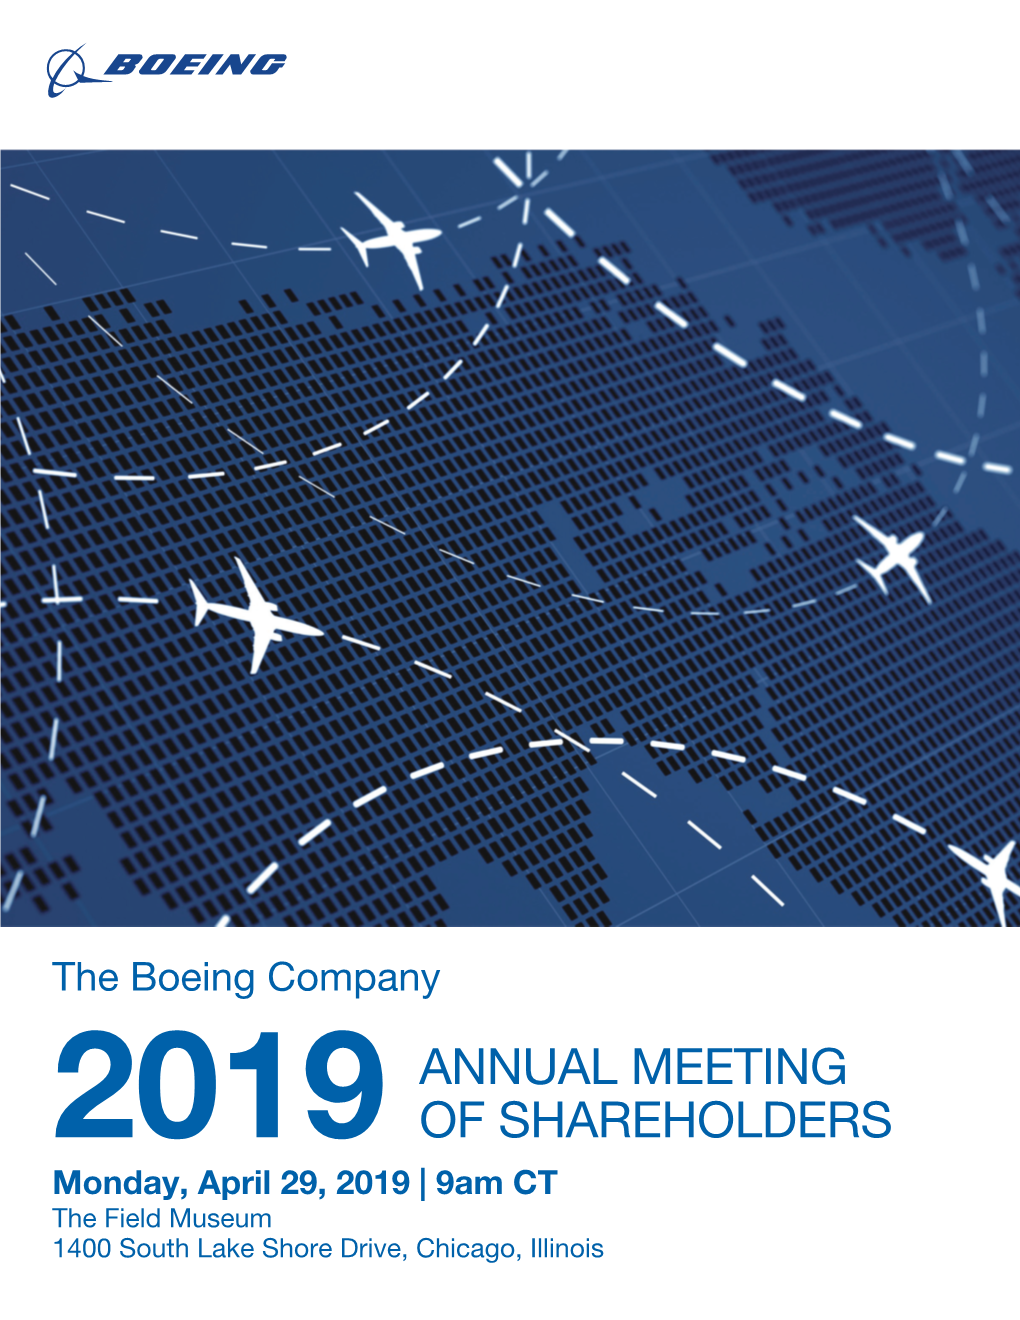 Boeing's 2019 Proxy Statement